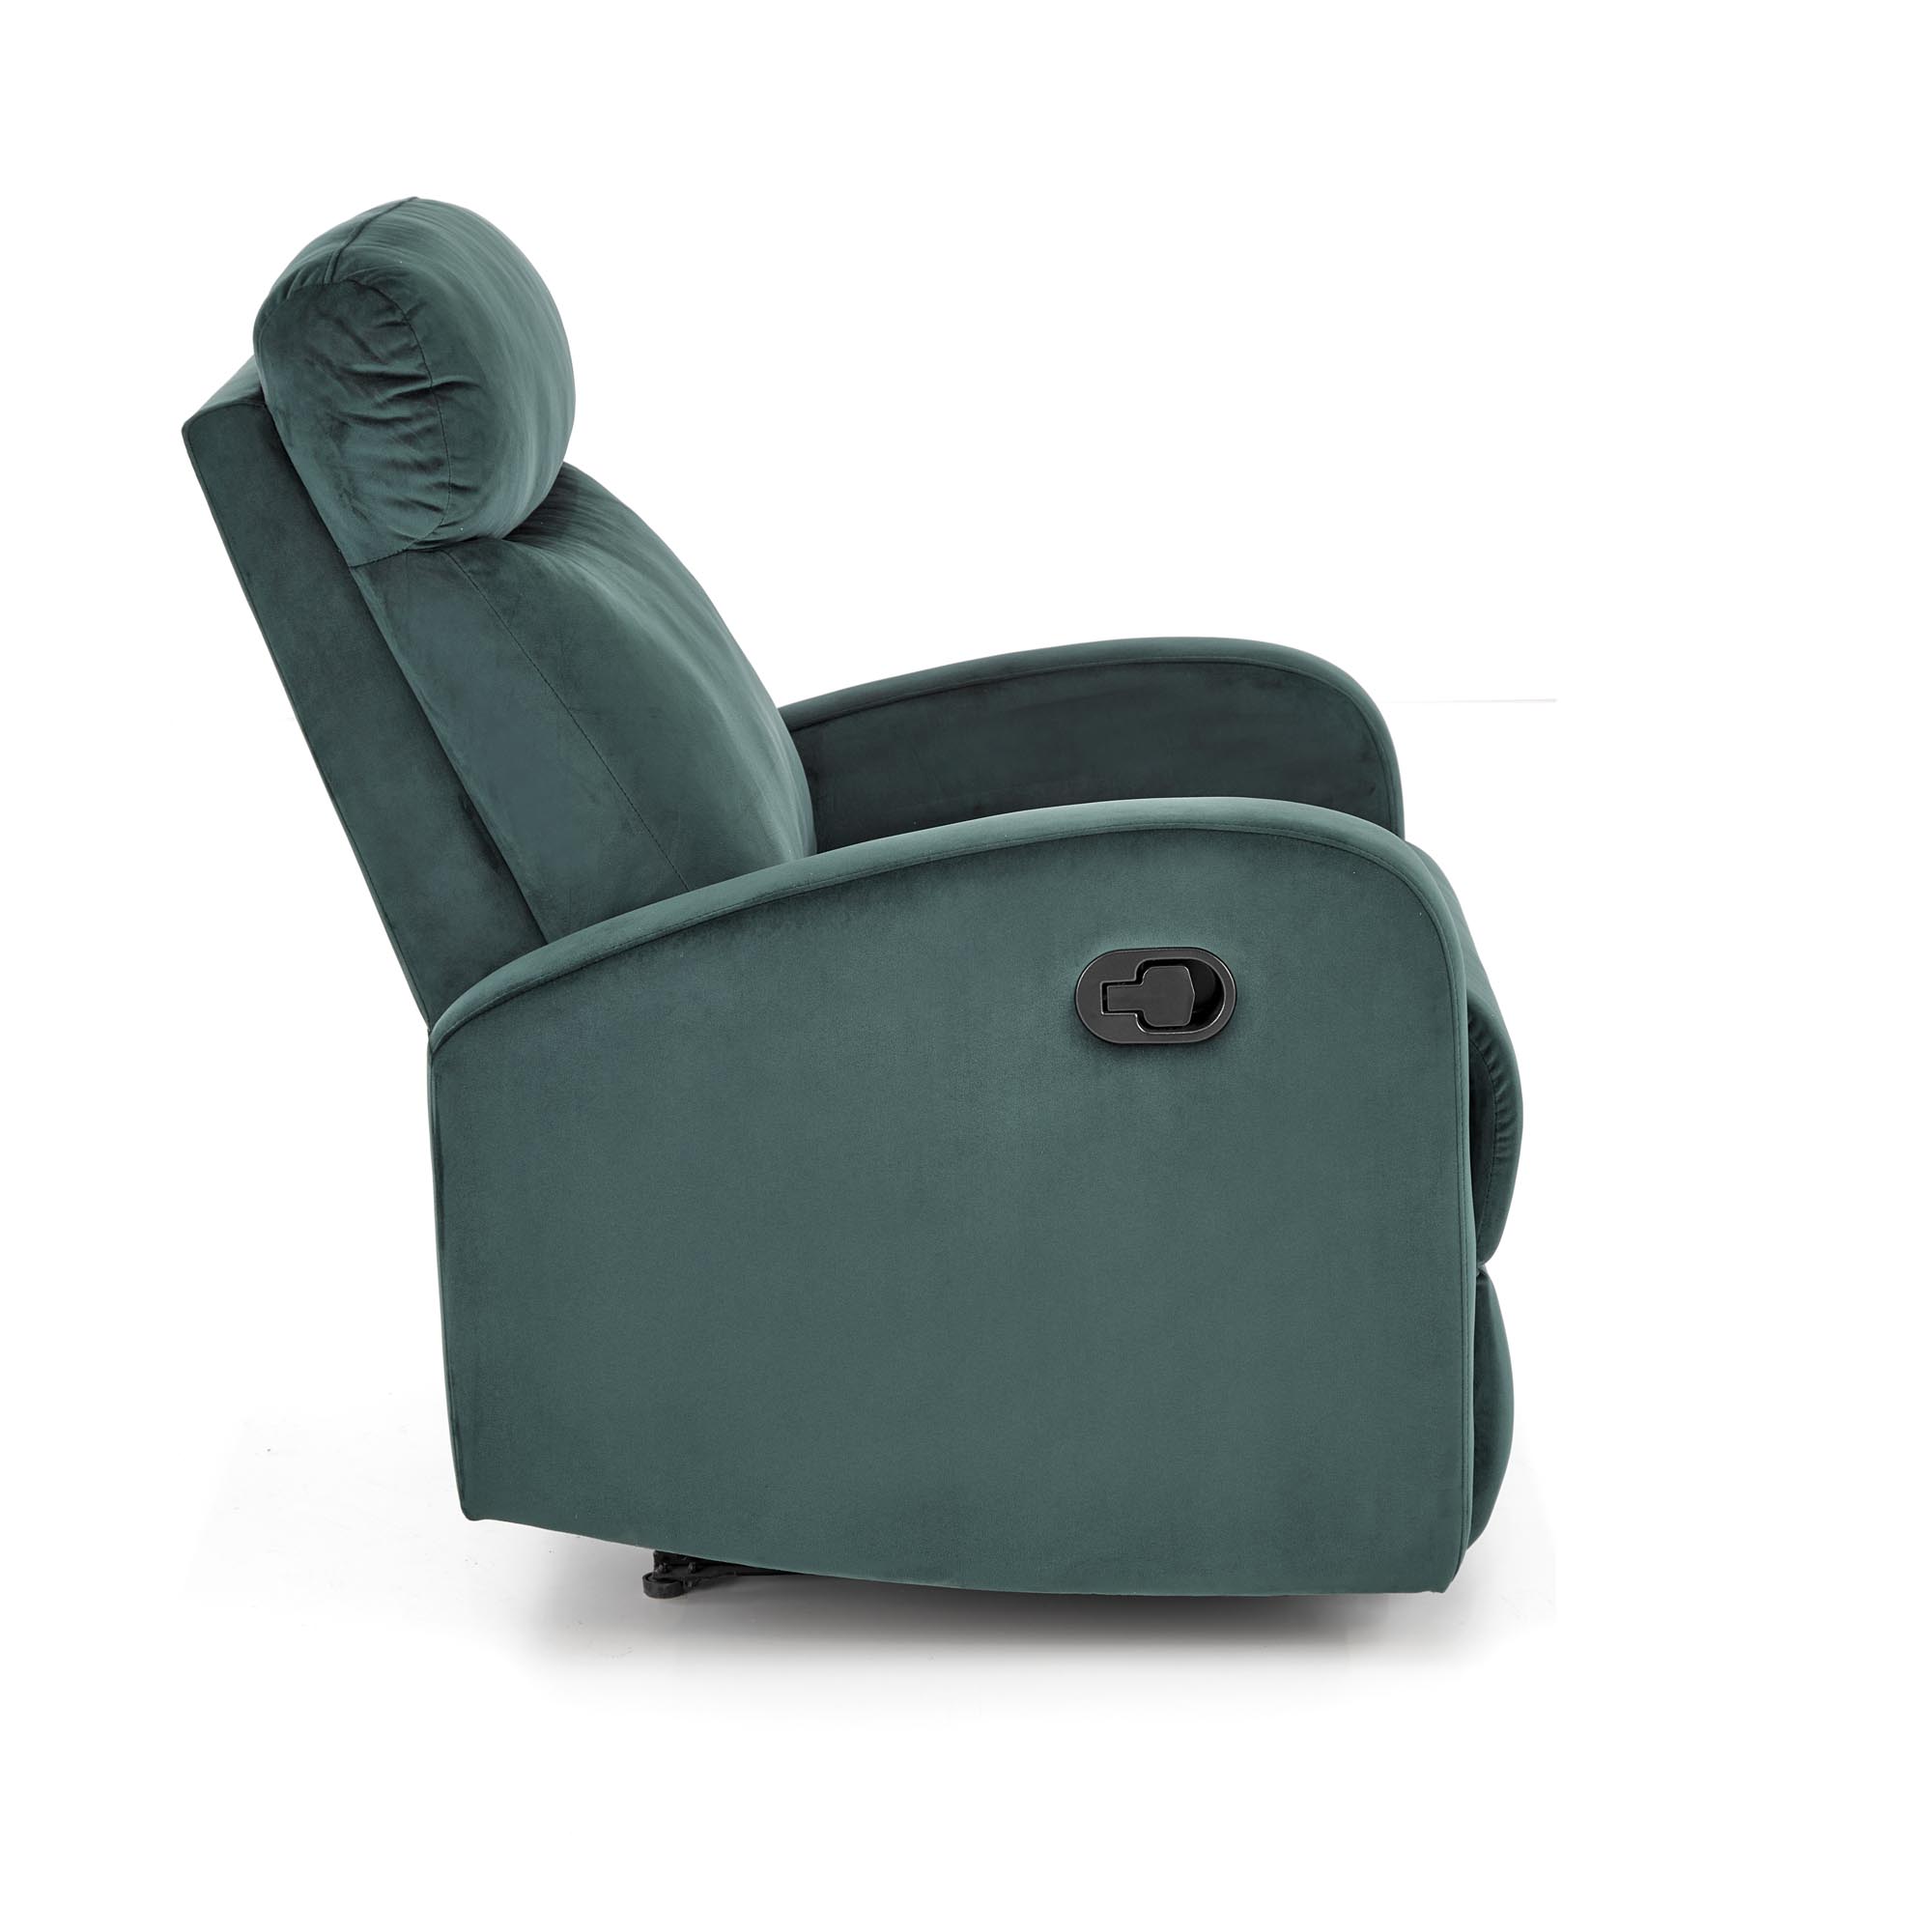 Fotel rozkładany z funkcją kołysania Wonder - ciemna zieleń fotel rozkładany z funkcją kołysania wonder - ciemna zieleń